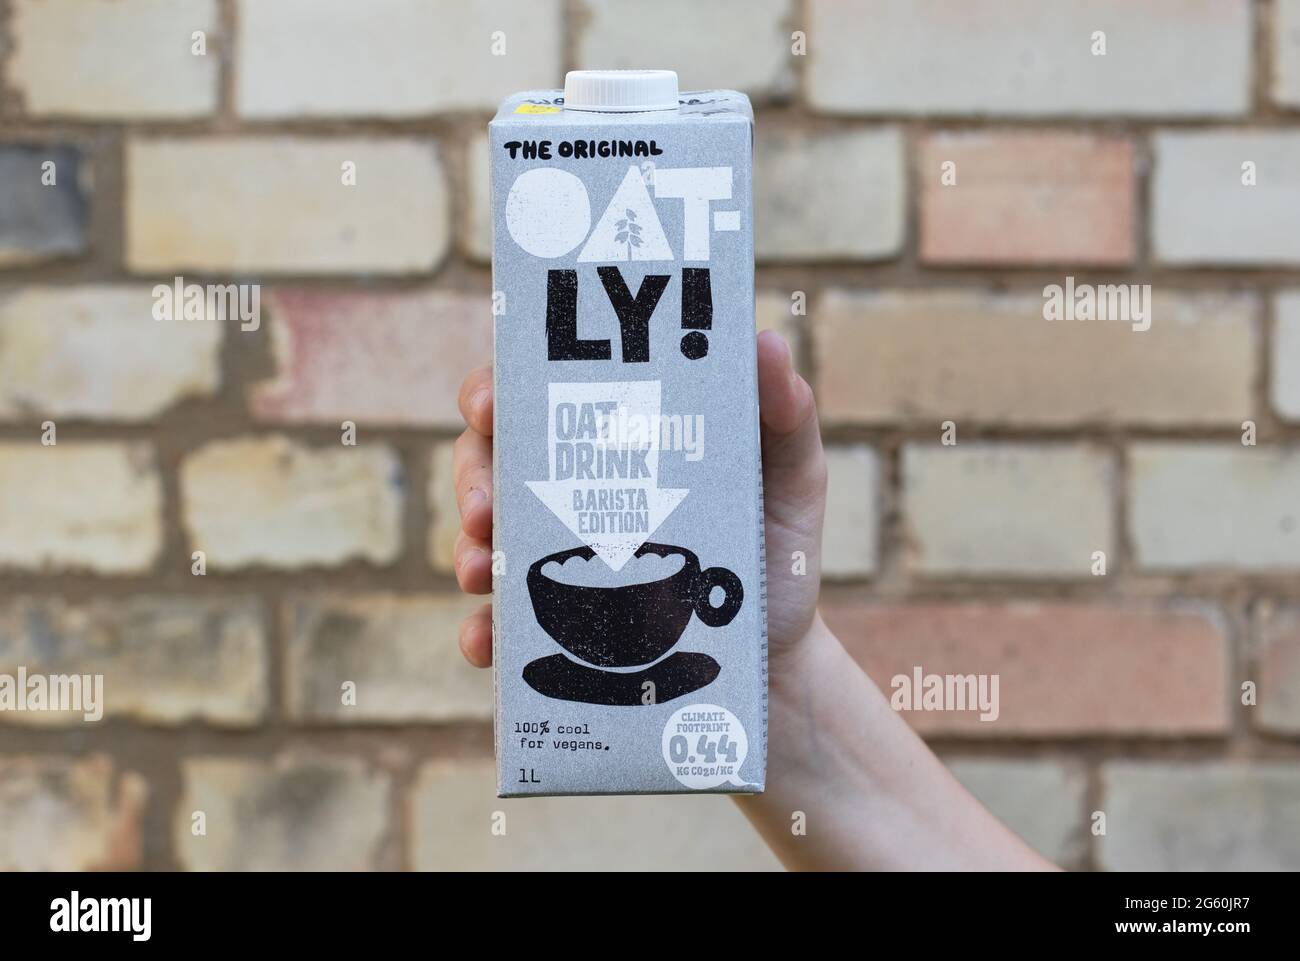 Londra / UK - 24 agosto 2019 - mano che tiene un cartone di latte Oatly. Oatly è un'alternativa di latte vegan senza latte. Foto Stock